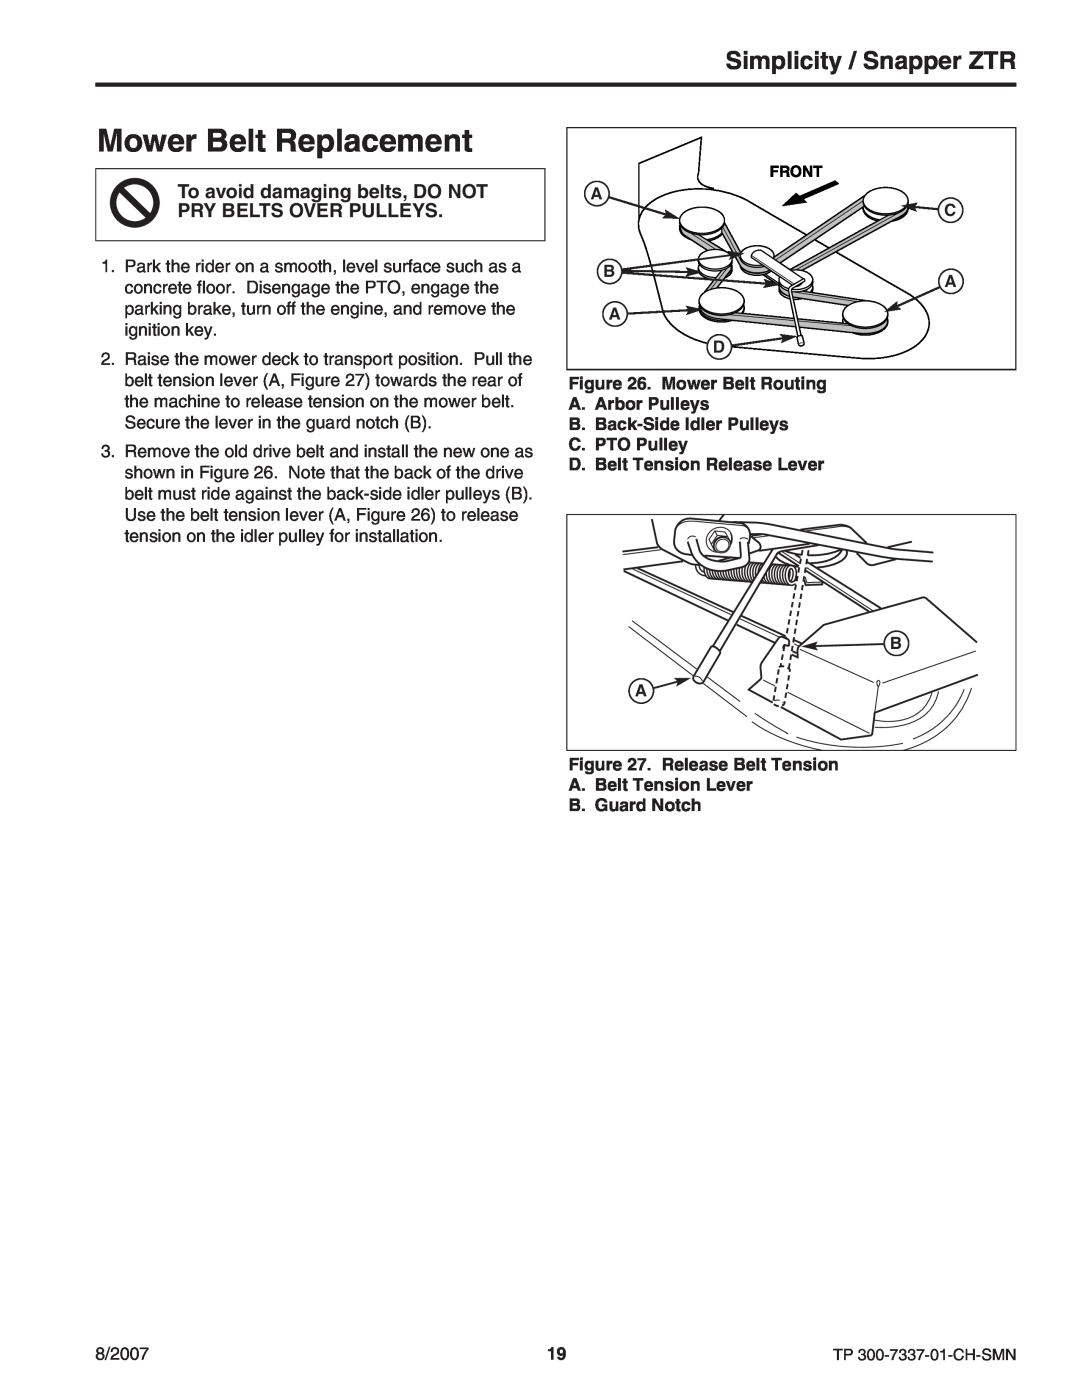 Snapper ZT3000 manual Mower Belt Replacement, Simplicity / Snapper ZTR 